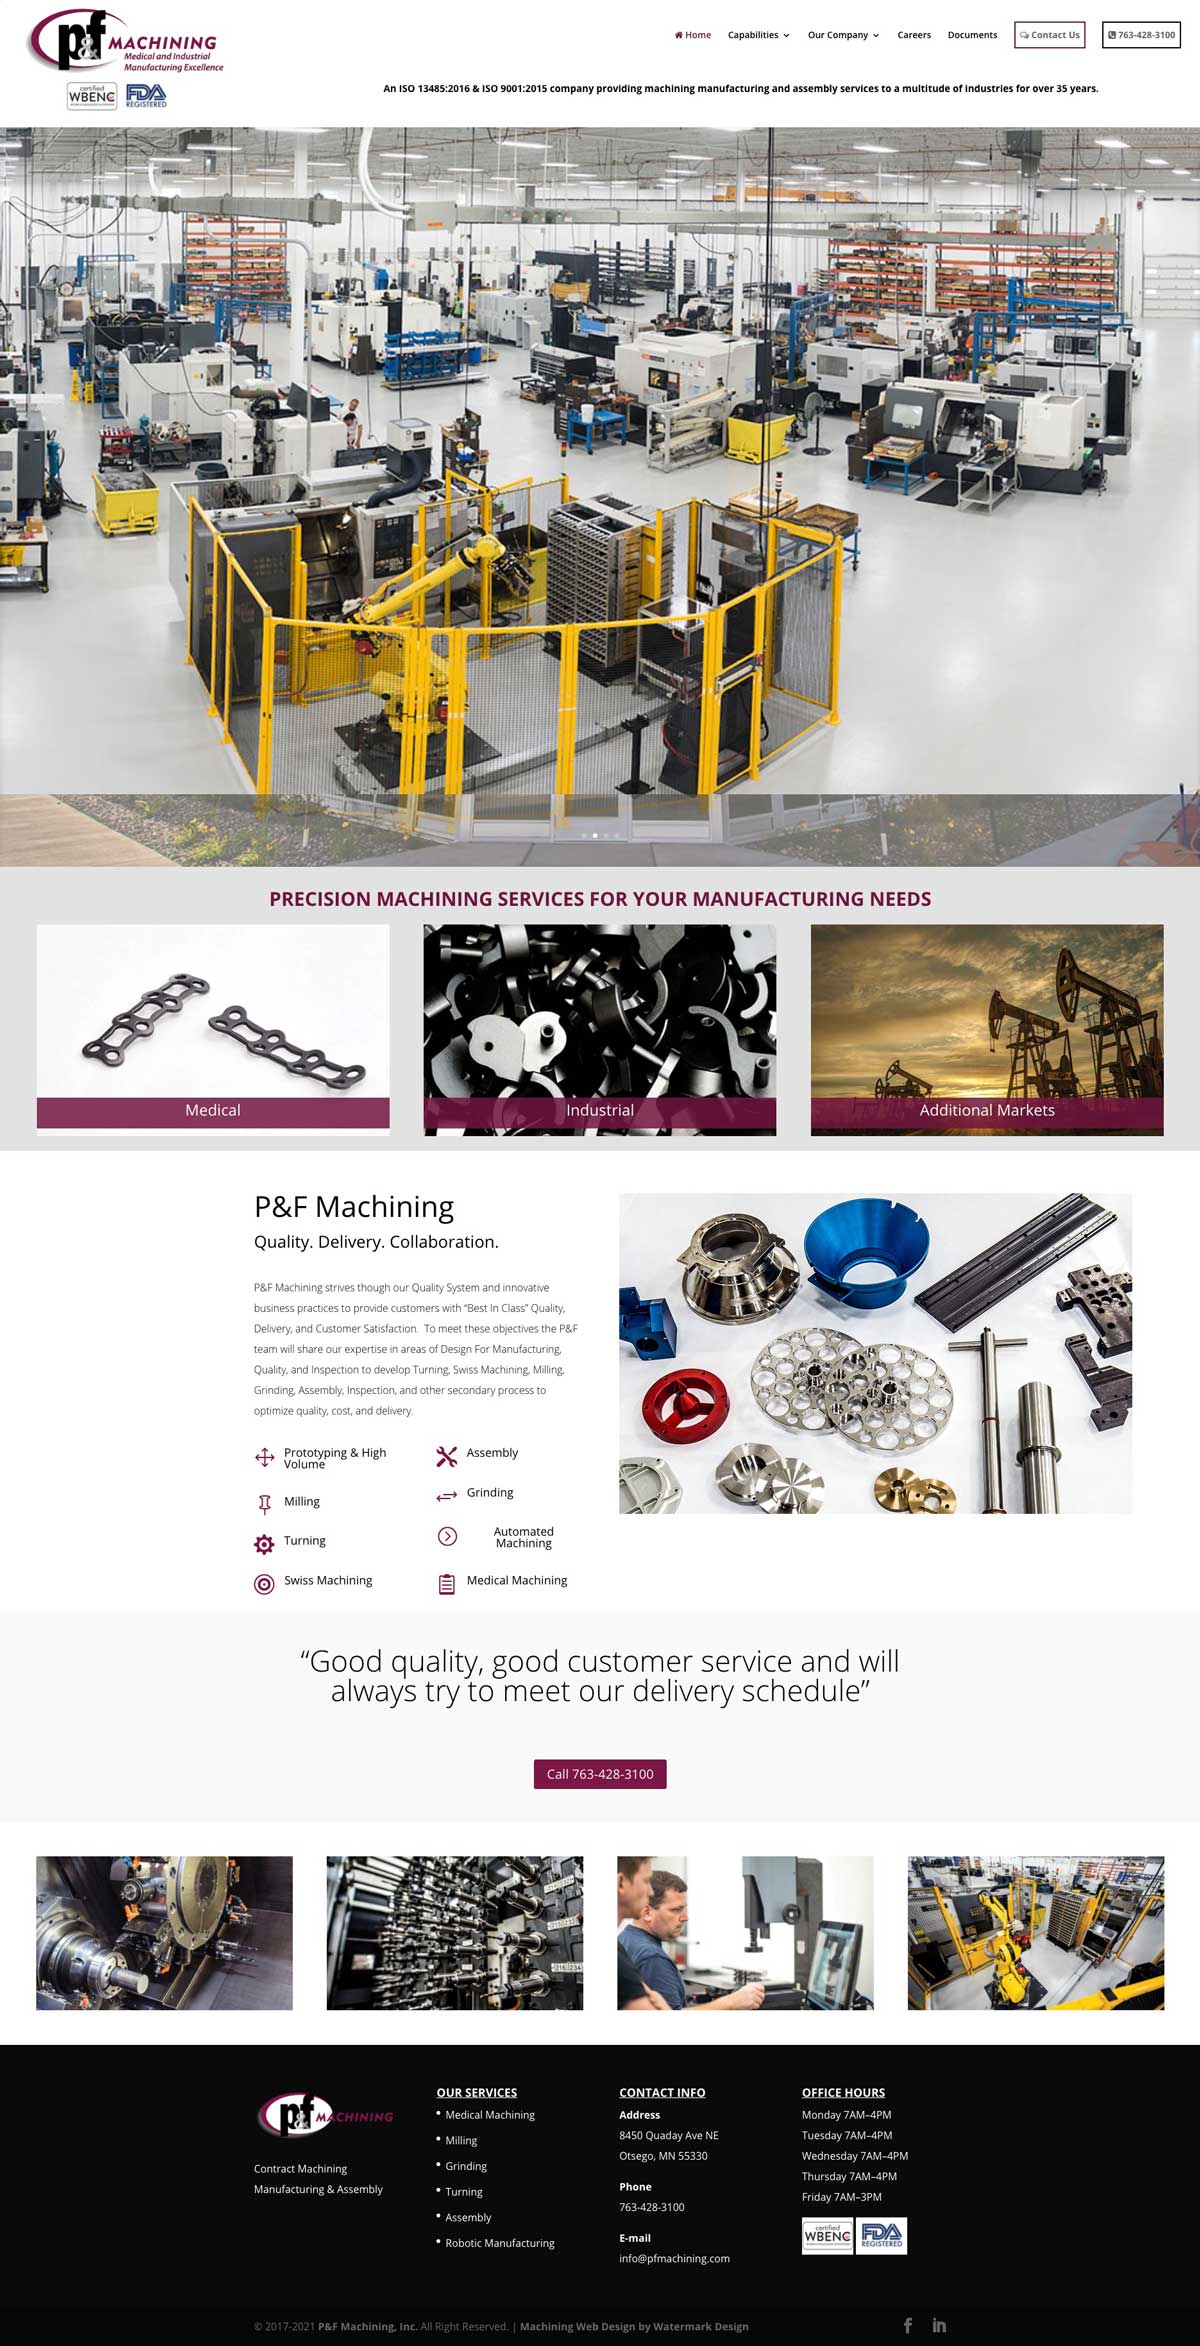 p&f machining website design 01